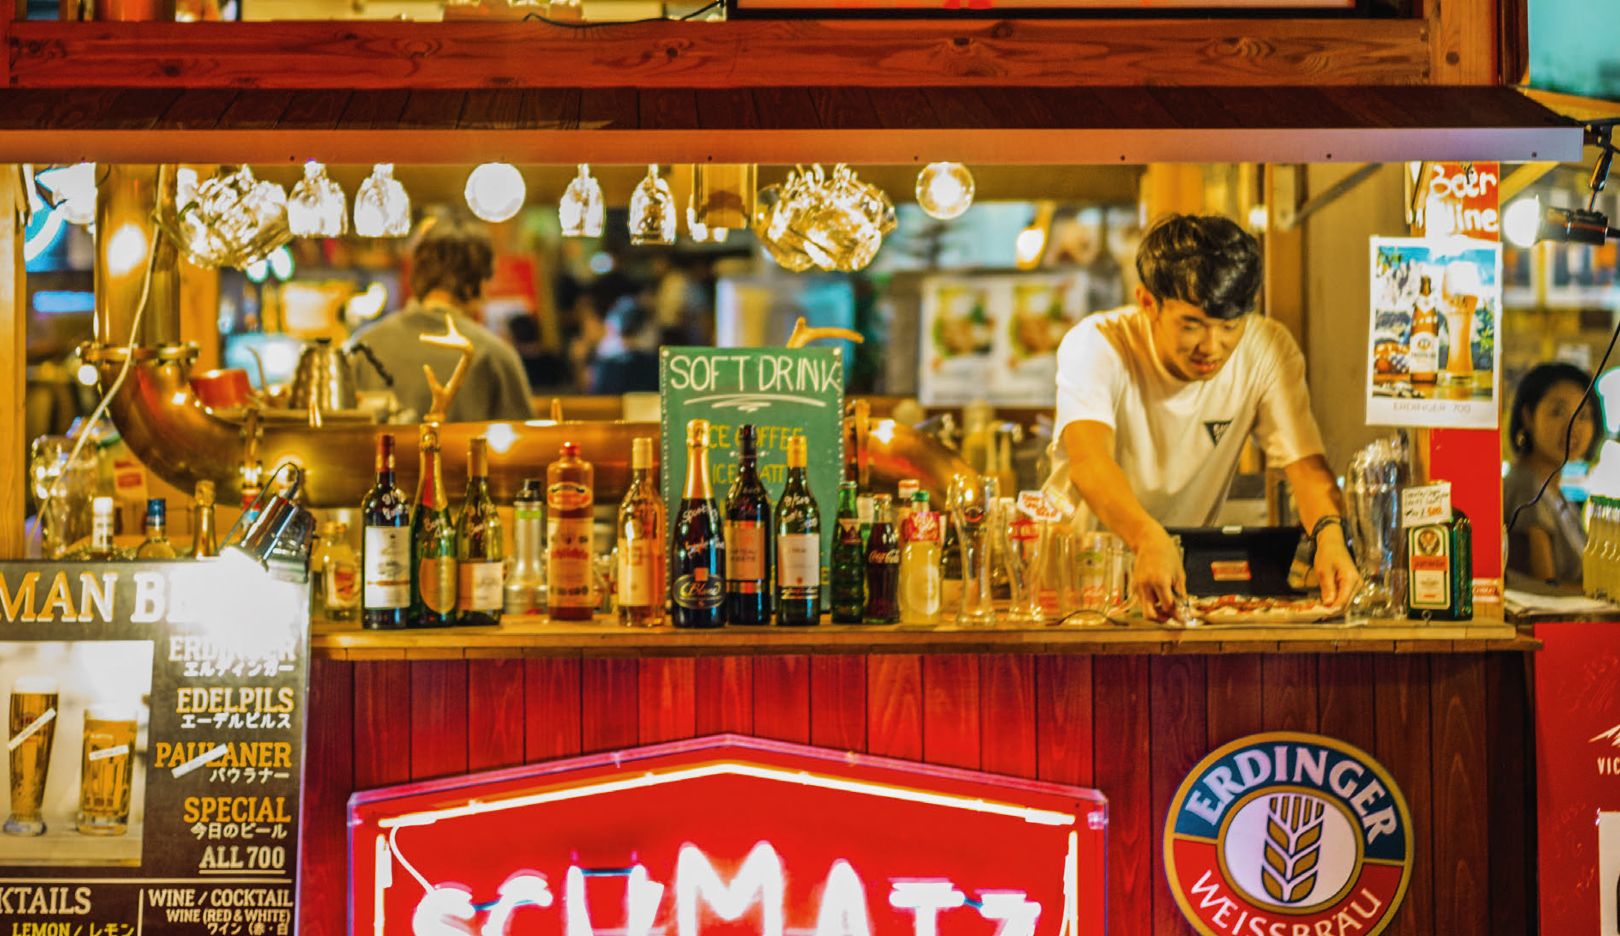 Um gostinho de Alemanha: em Tóquio, André Lotterer descobriu esta barraquinha, “Schmatz”, que o lembra de seu país de origem – por causa do “Schnitzelburger”, salsichas e cerveja alemã